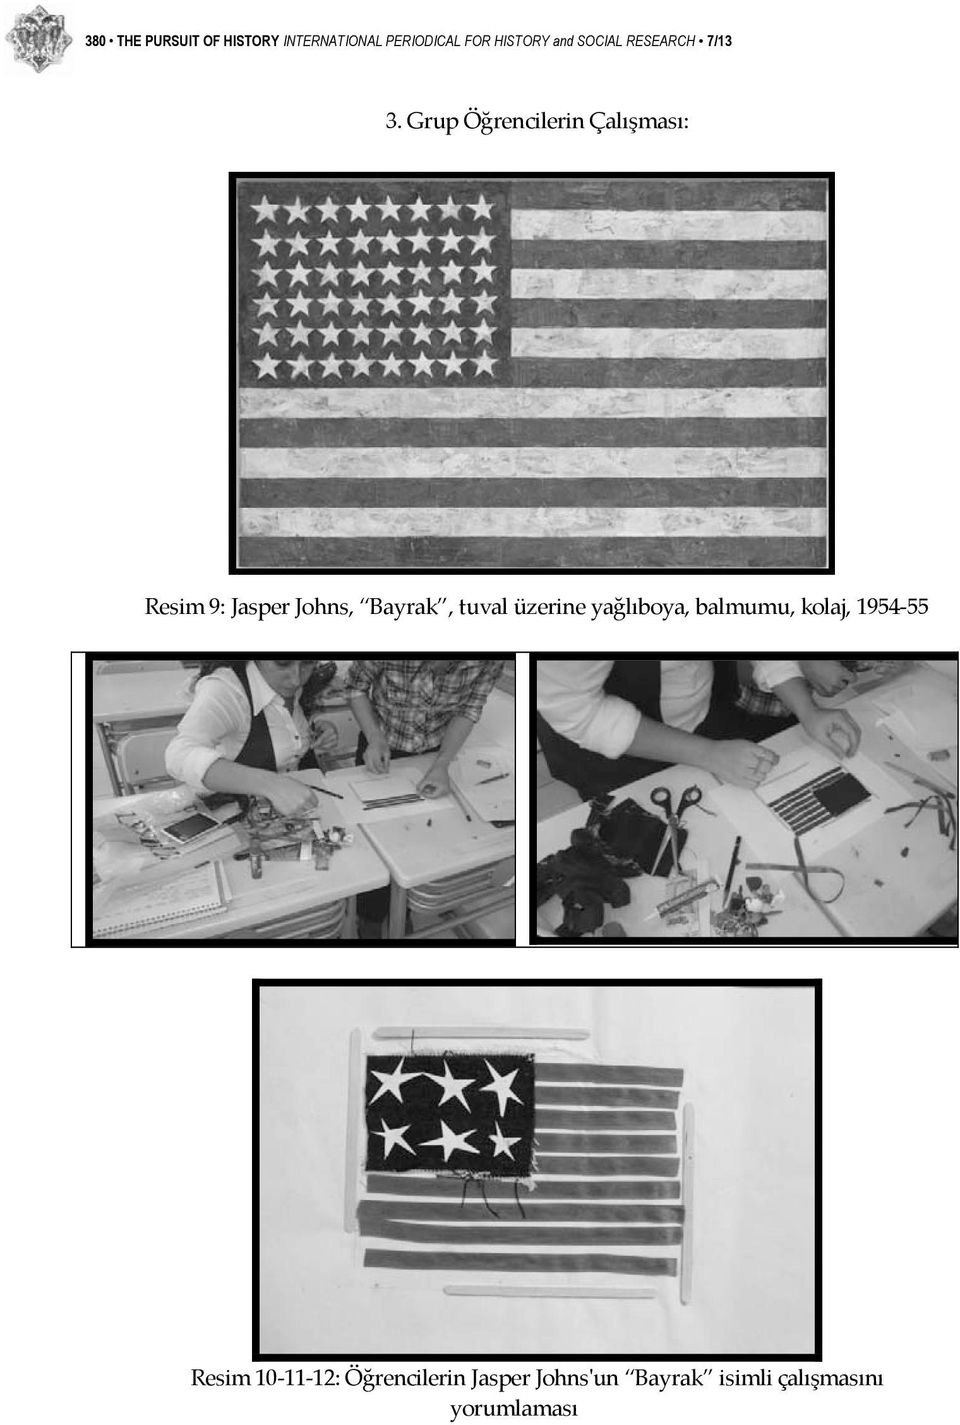 Grup Öğrencilerin Çalışması: Resim 9: Jasper Johns, Bayrak, tuval